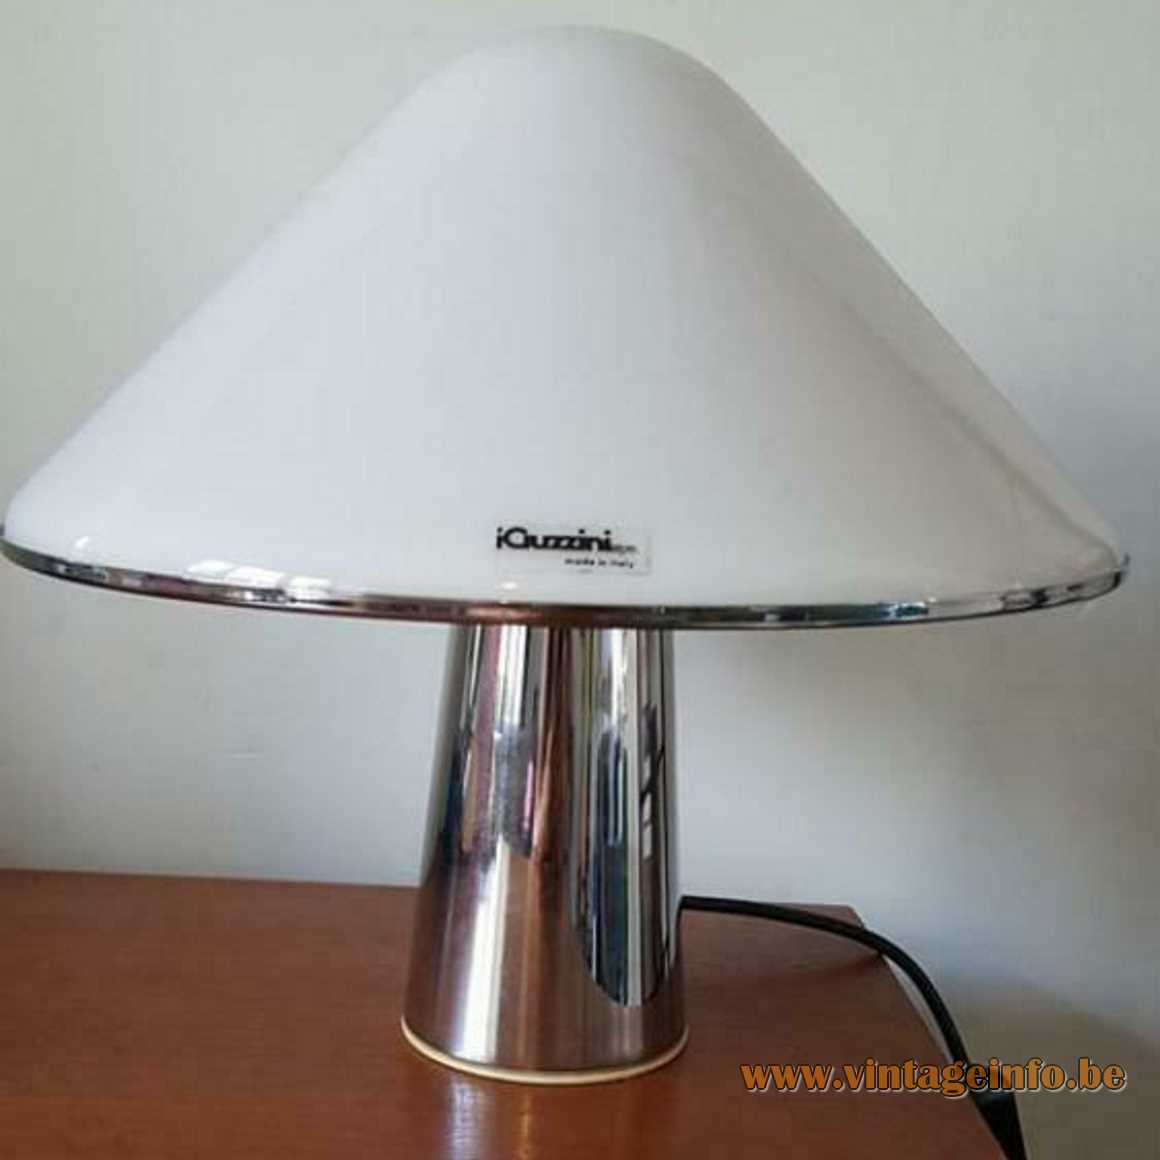 Harvey Guzzini Elpis table lamp round chrome base conical acrylic mushroom lampshade 1960s 1970s iGuzzini Italy